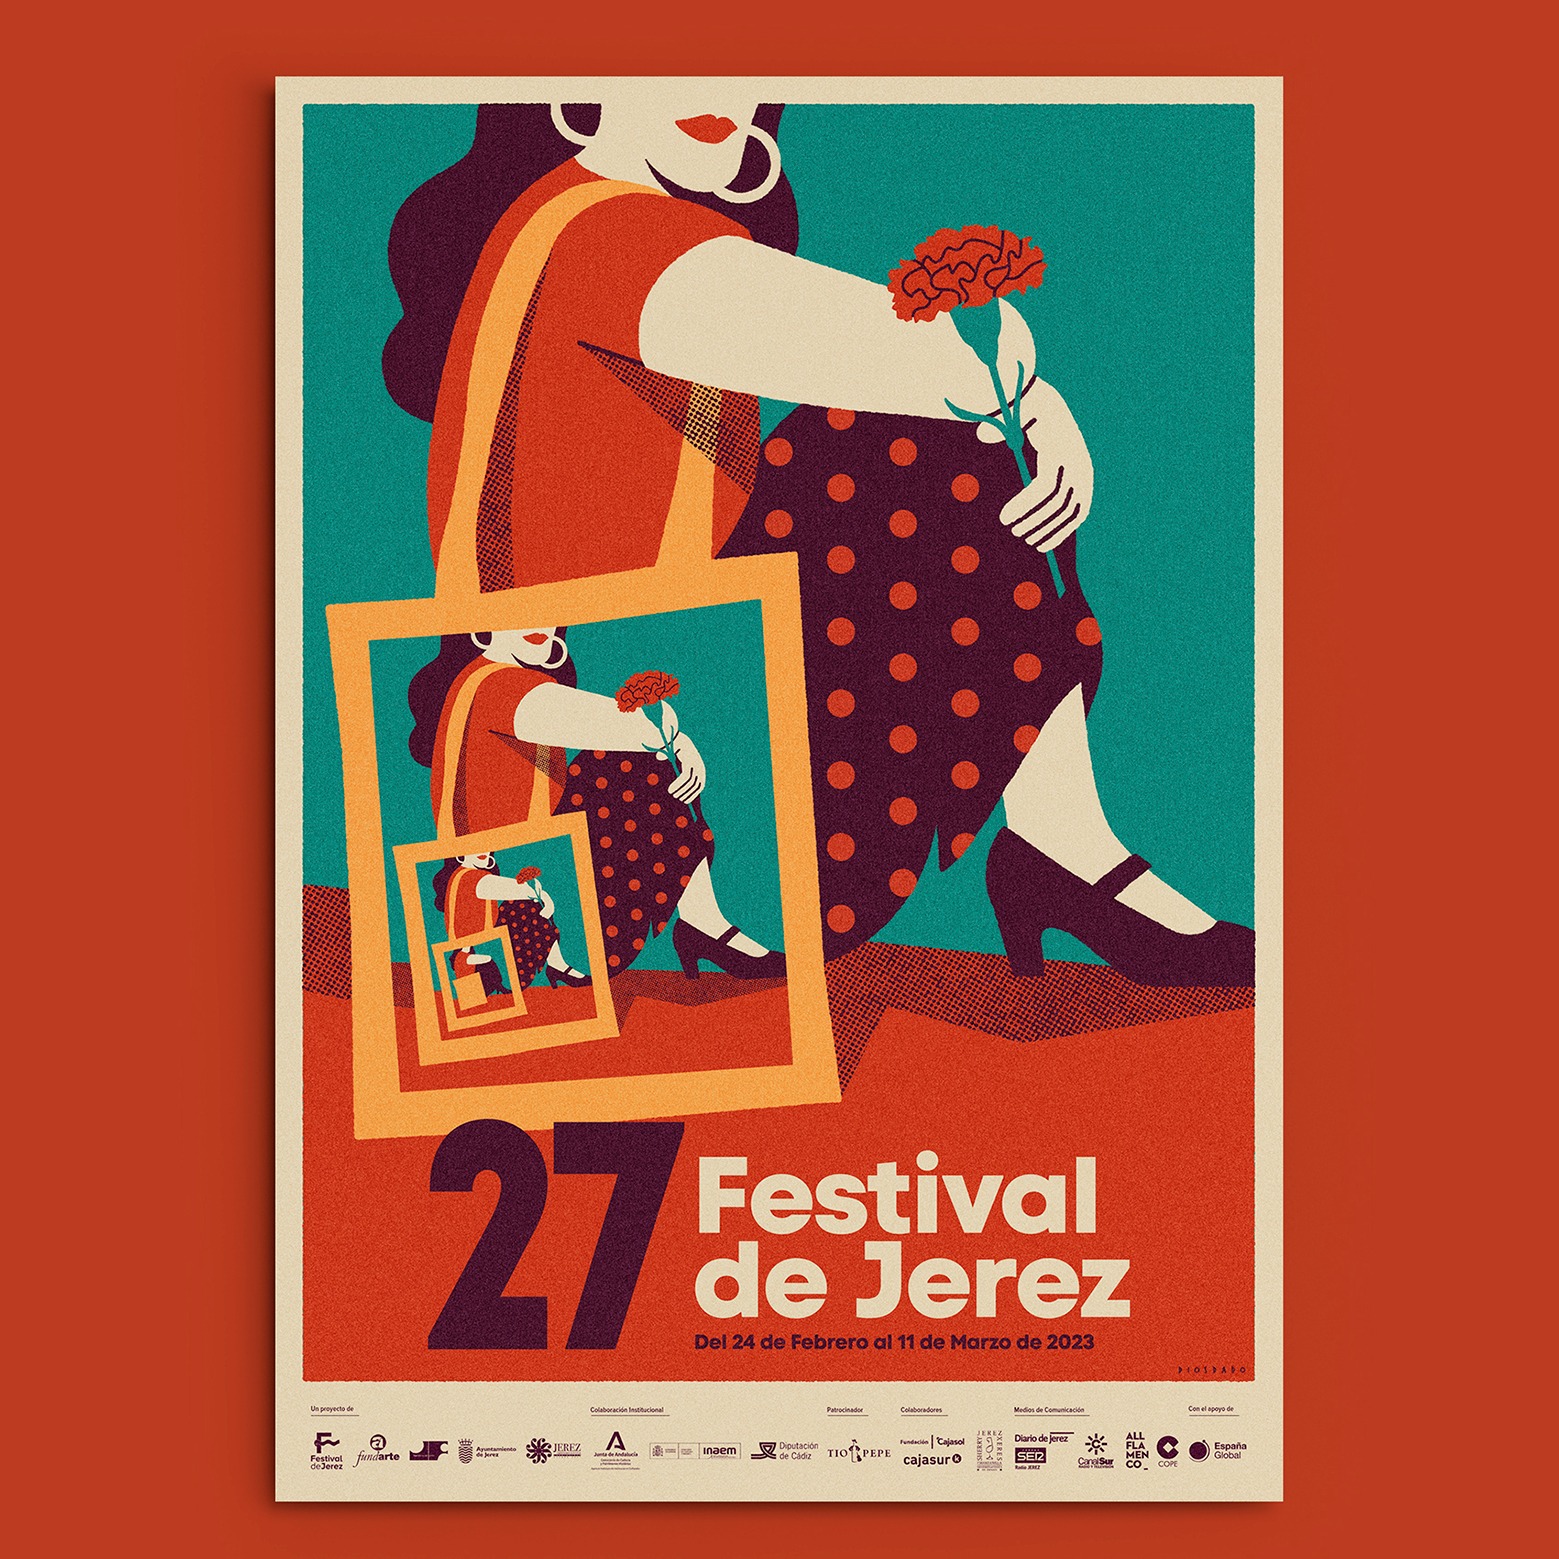 Annual flamenco festival in Jerez de la Frontera image